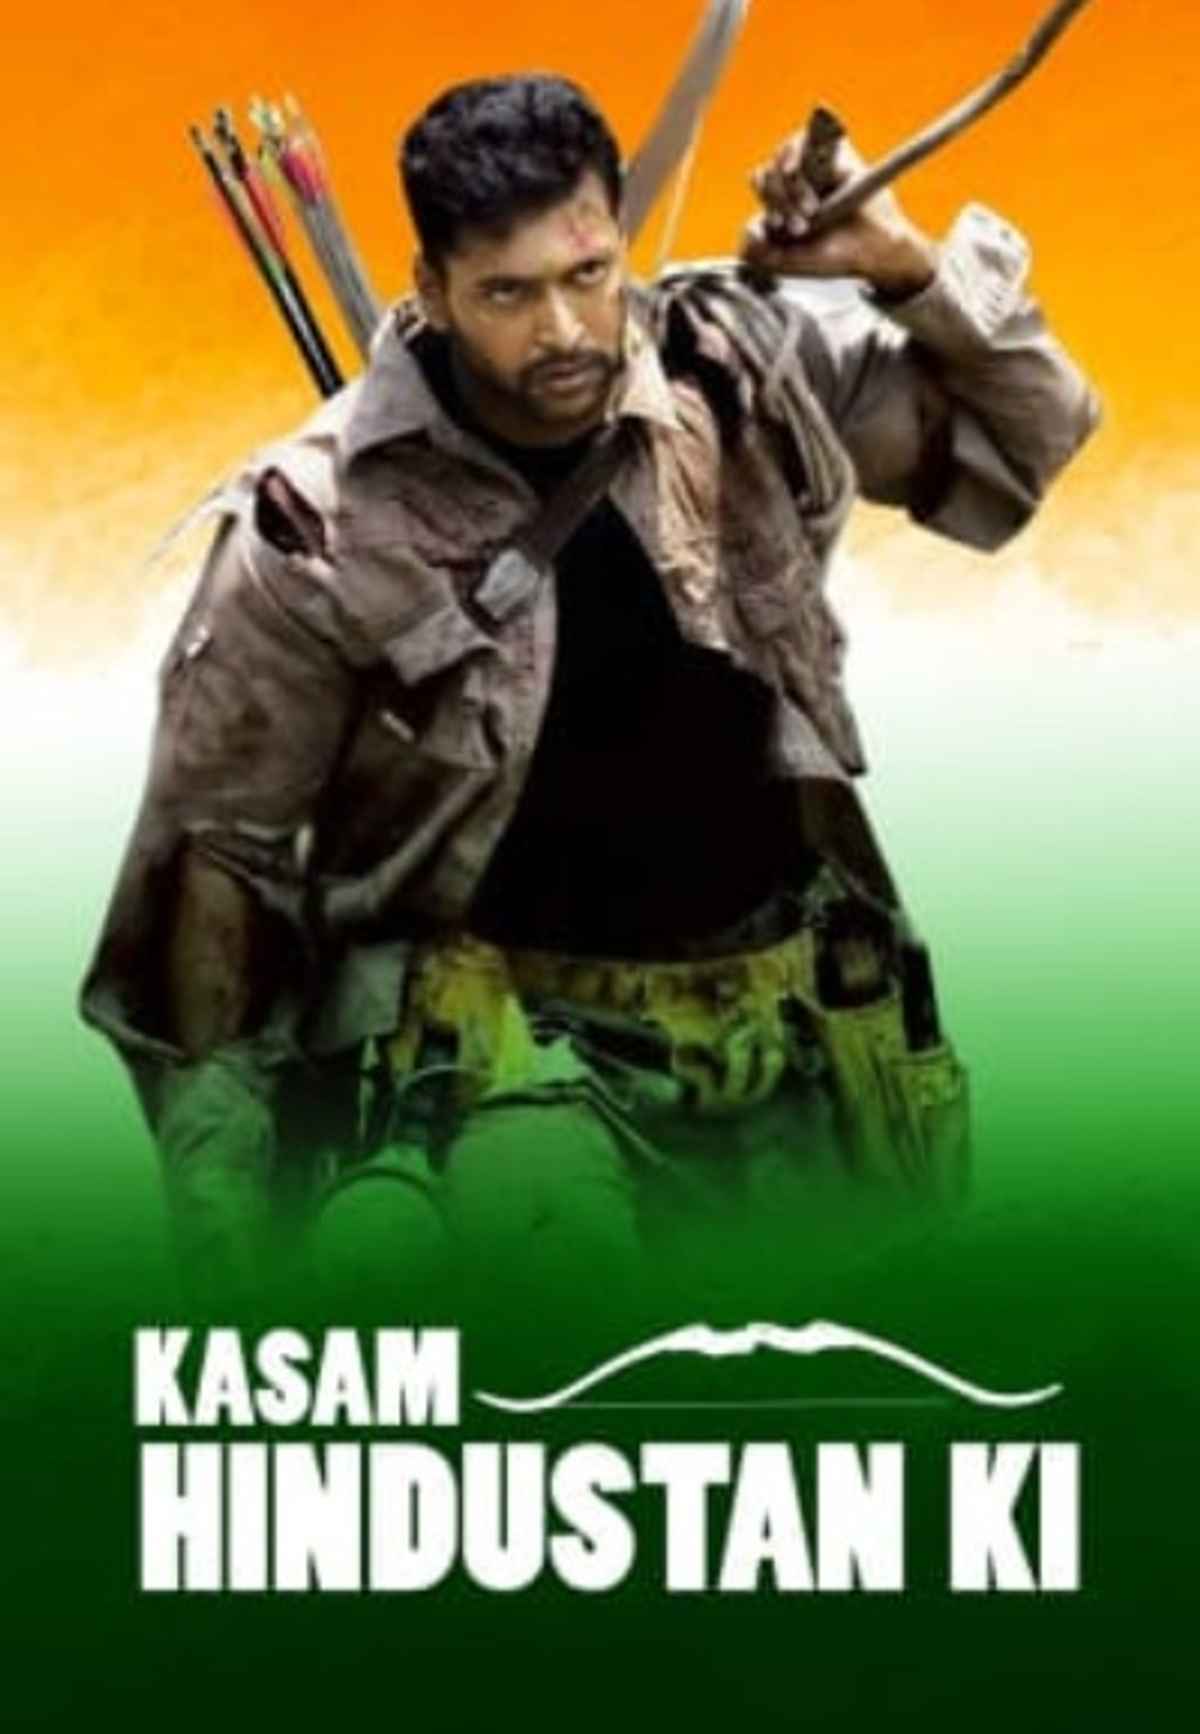 Kasam Hindustan Ki